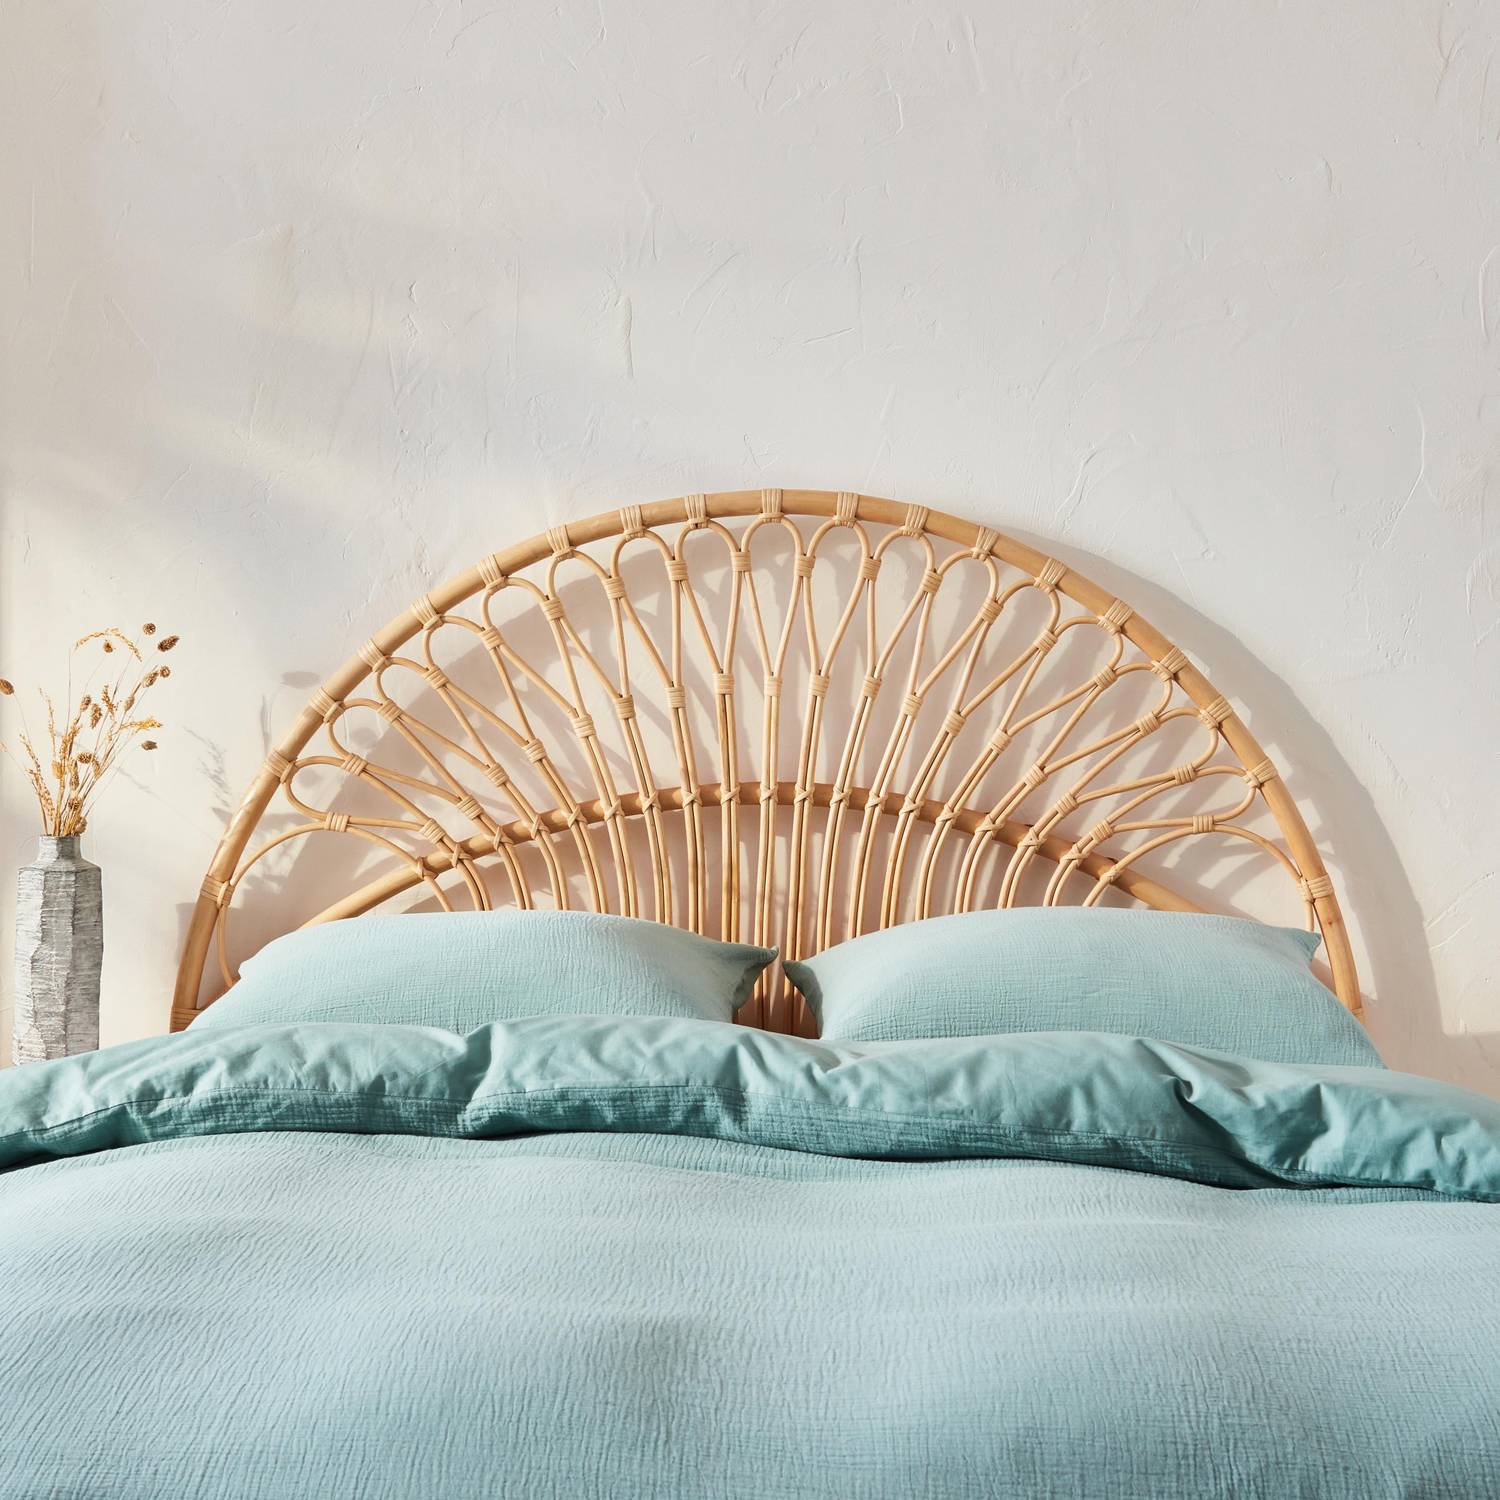 Kopfteil aus Rattan Natur passend für Betten mit einer Breite von 140 cm, L 140 x T 3 x H 115 cm Photo2